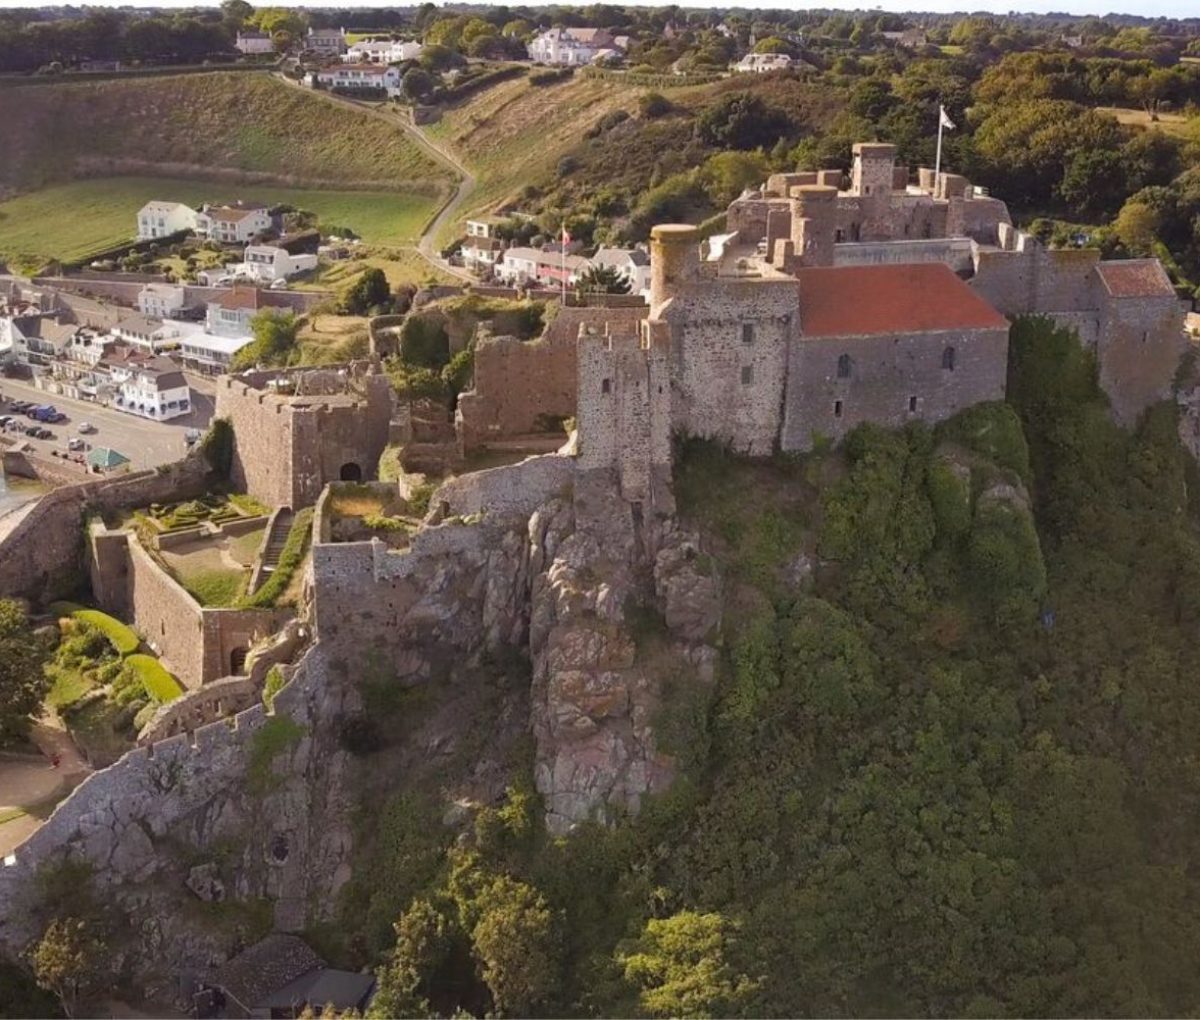 Mont Orgueil Castle, Jersey